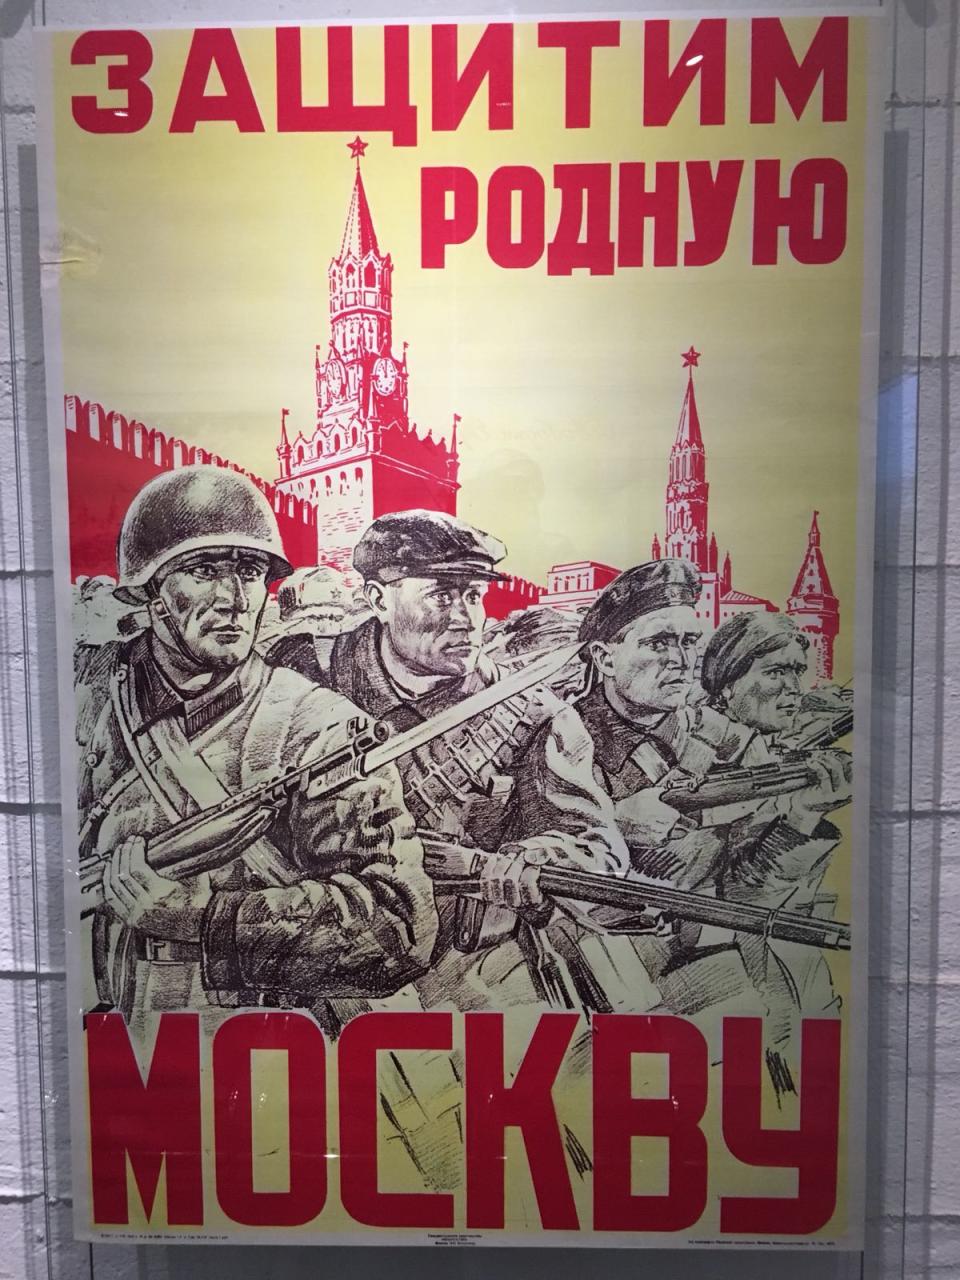 Russian Propaganda (Picture: Pete Hall)